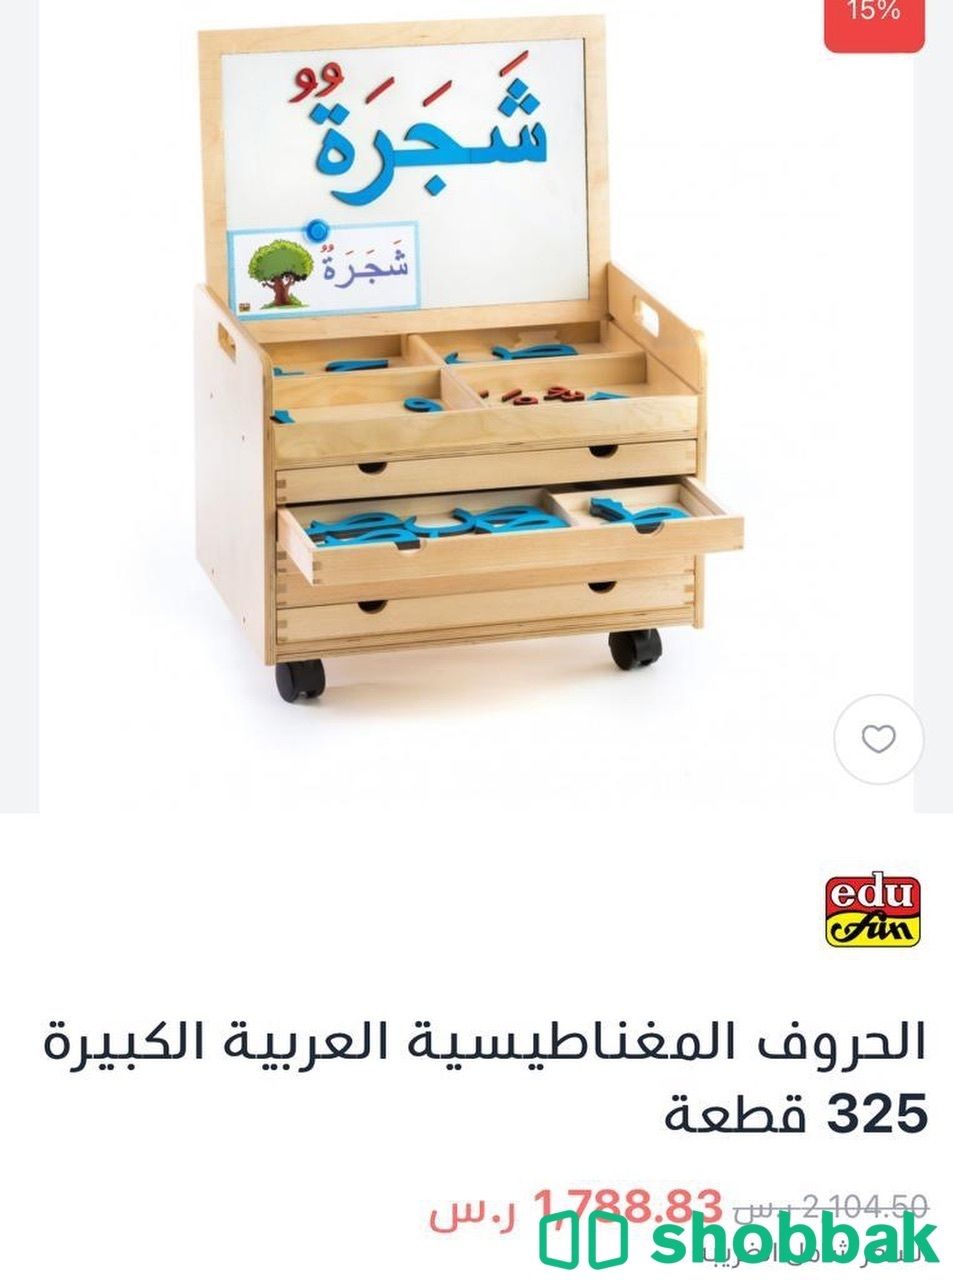 أحرف عربية خشبية مغناطيسية بحجم كبير ( البيع لأعلى سعر) Shobbak Saudi Arabia